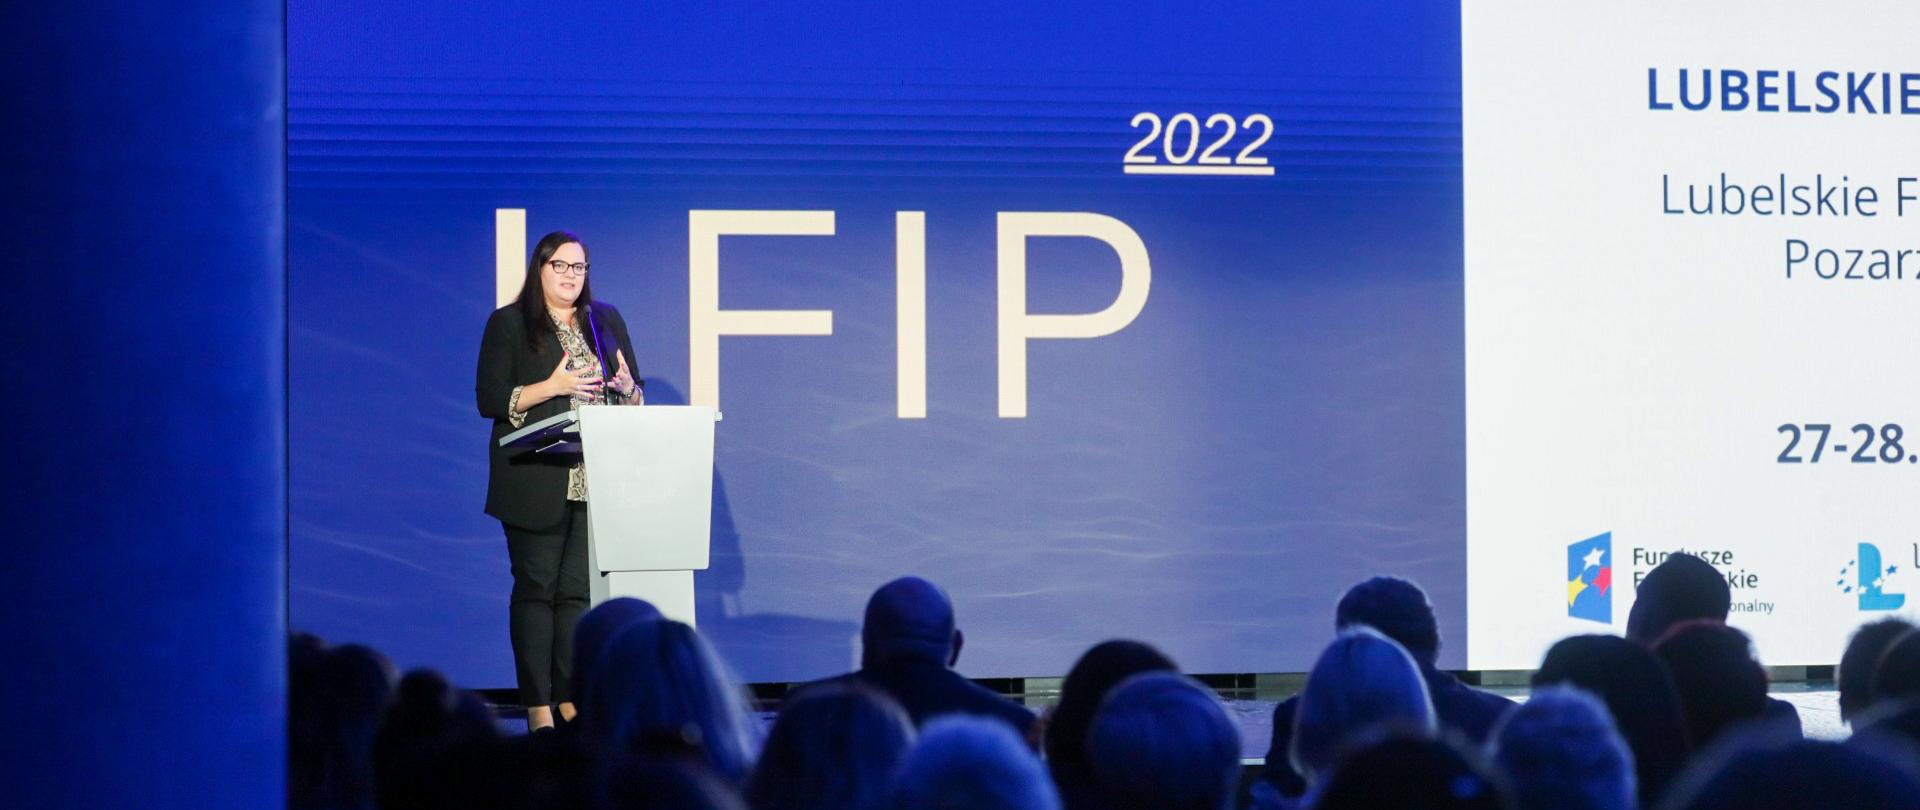 Na zdjęciu wiceminister Małgorzata Jarosińska-Jedynak stojąca na scenie przy mównicy. W tle ekran LED wyświetlający nazwę wydarzenia. U dołu widownia.